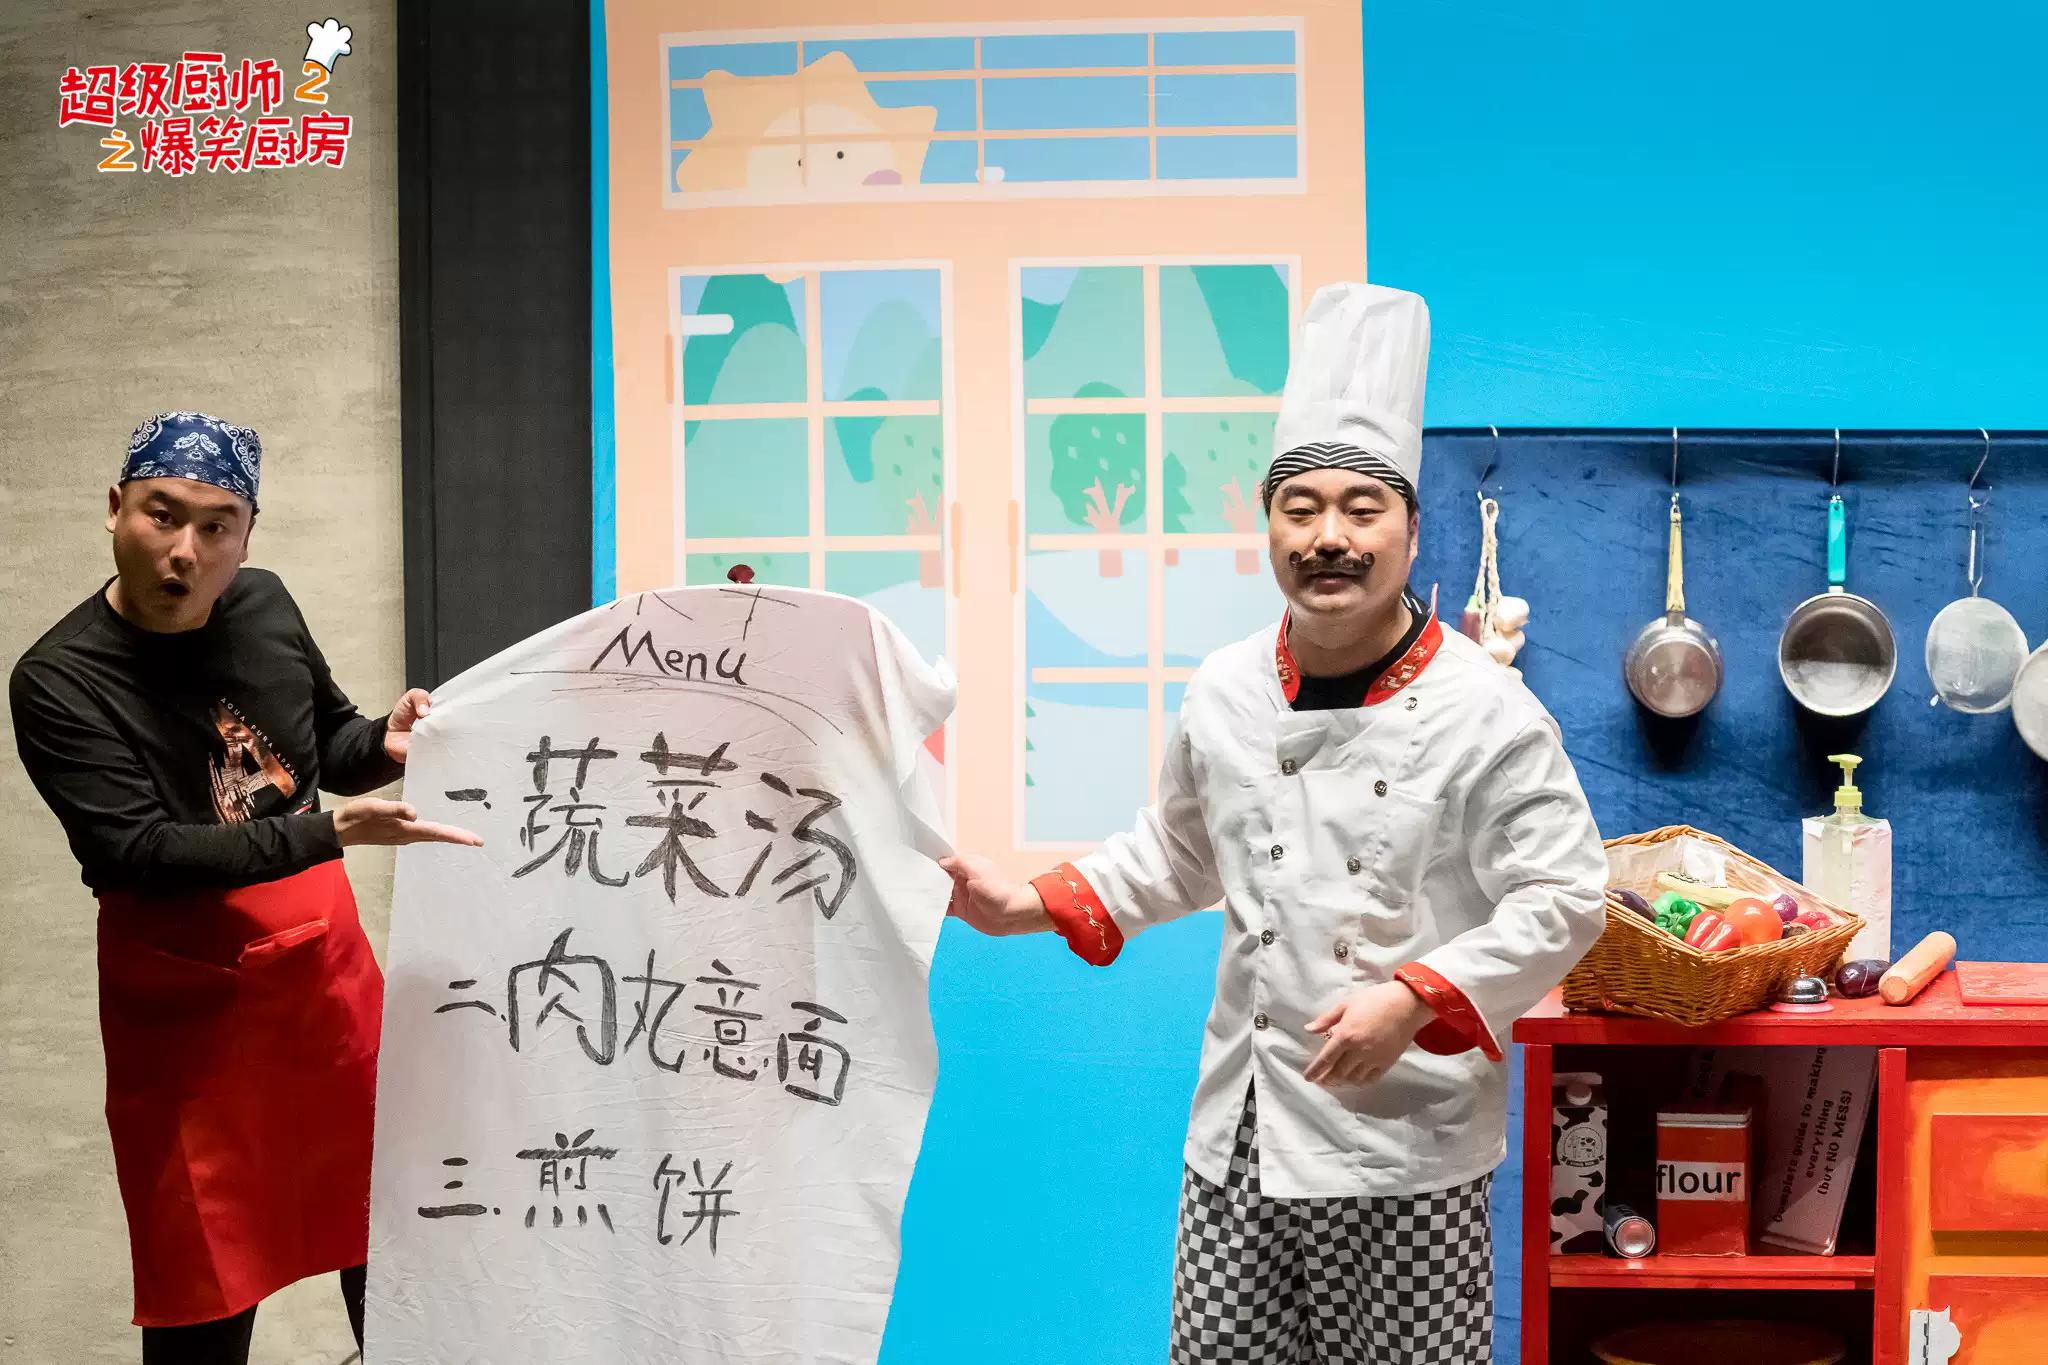 2021儿童剧《超级厨师2之爆笑厨房》-无锡站